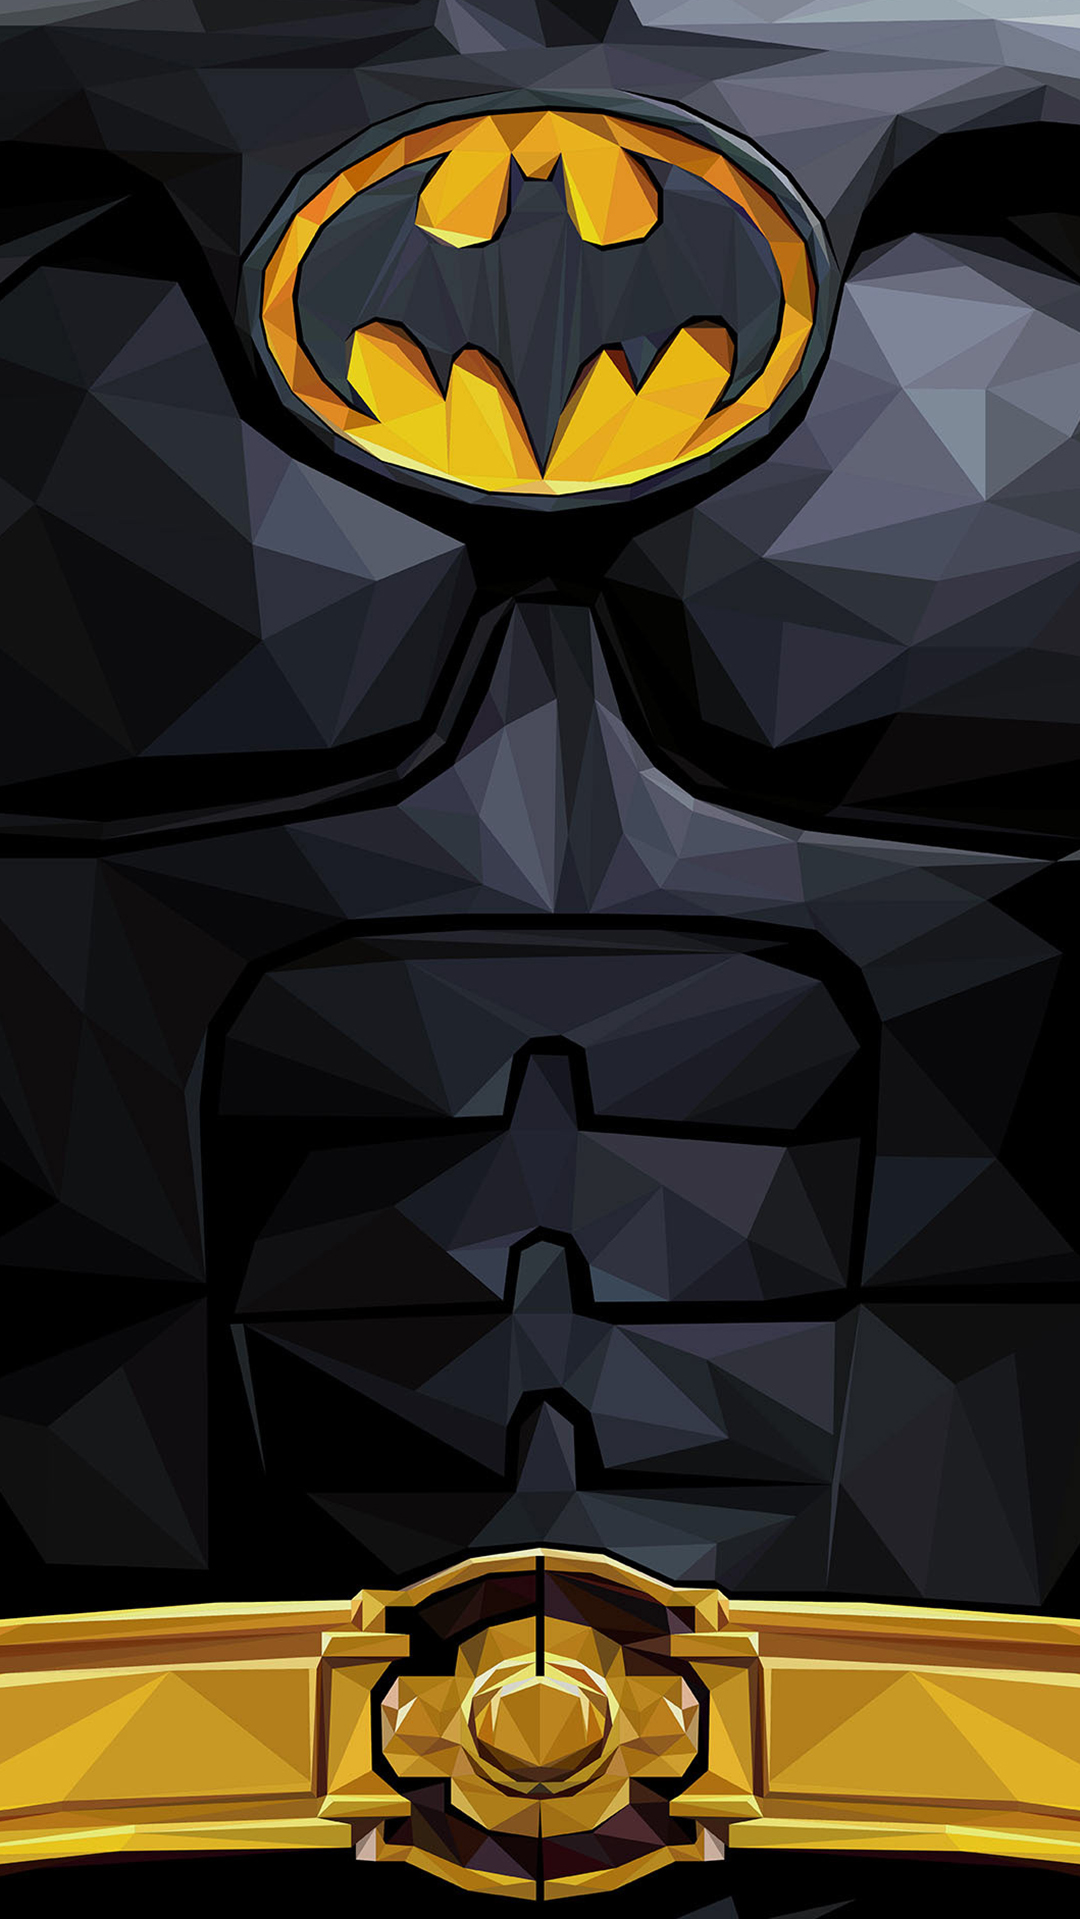 The Batman Phone Wallpaper - EnJpg